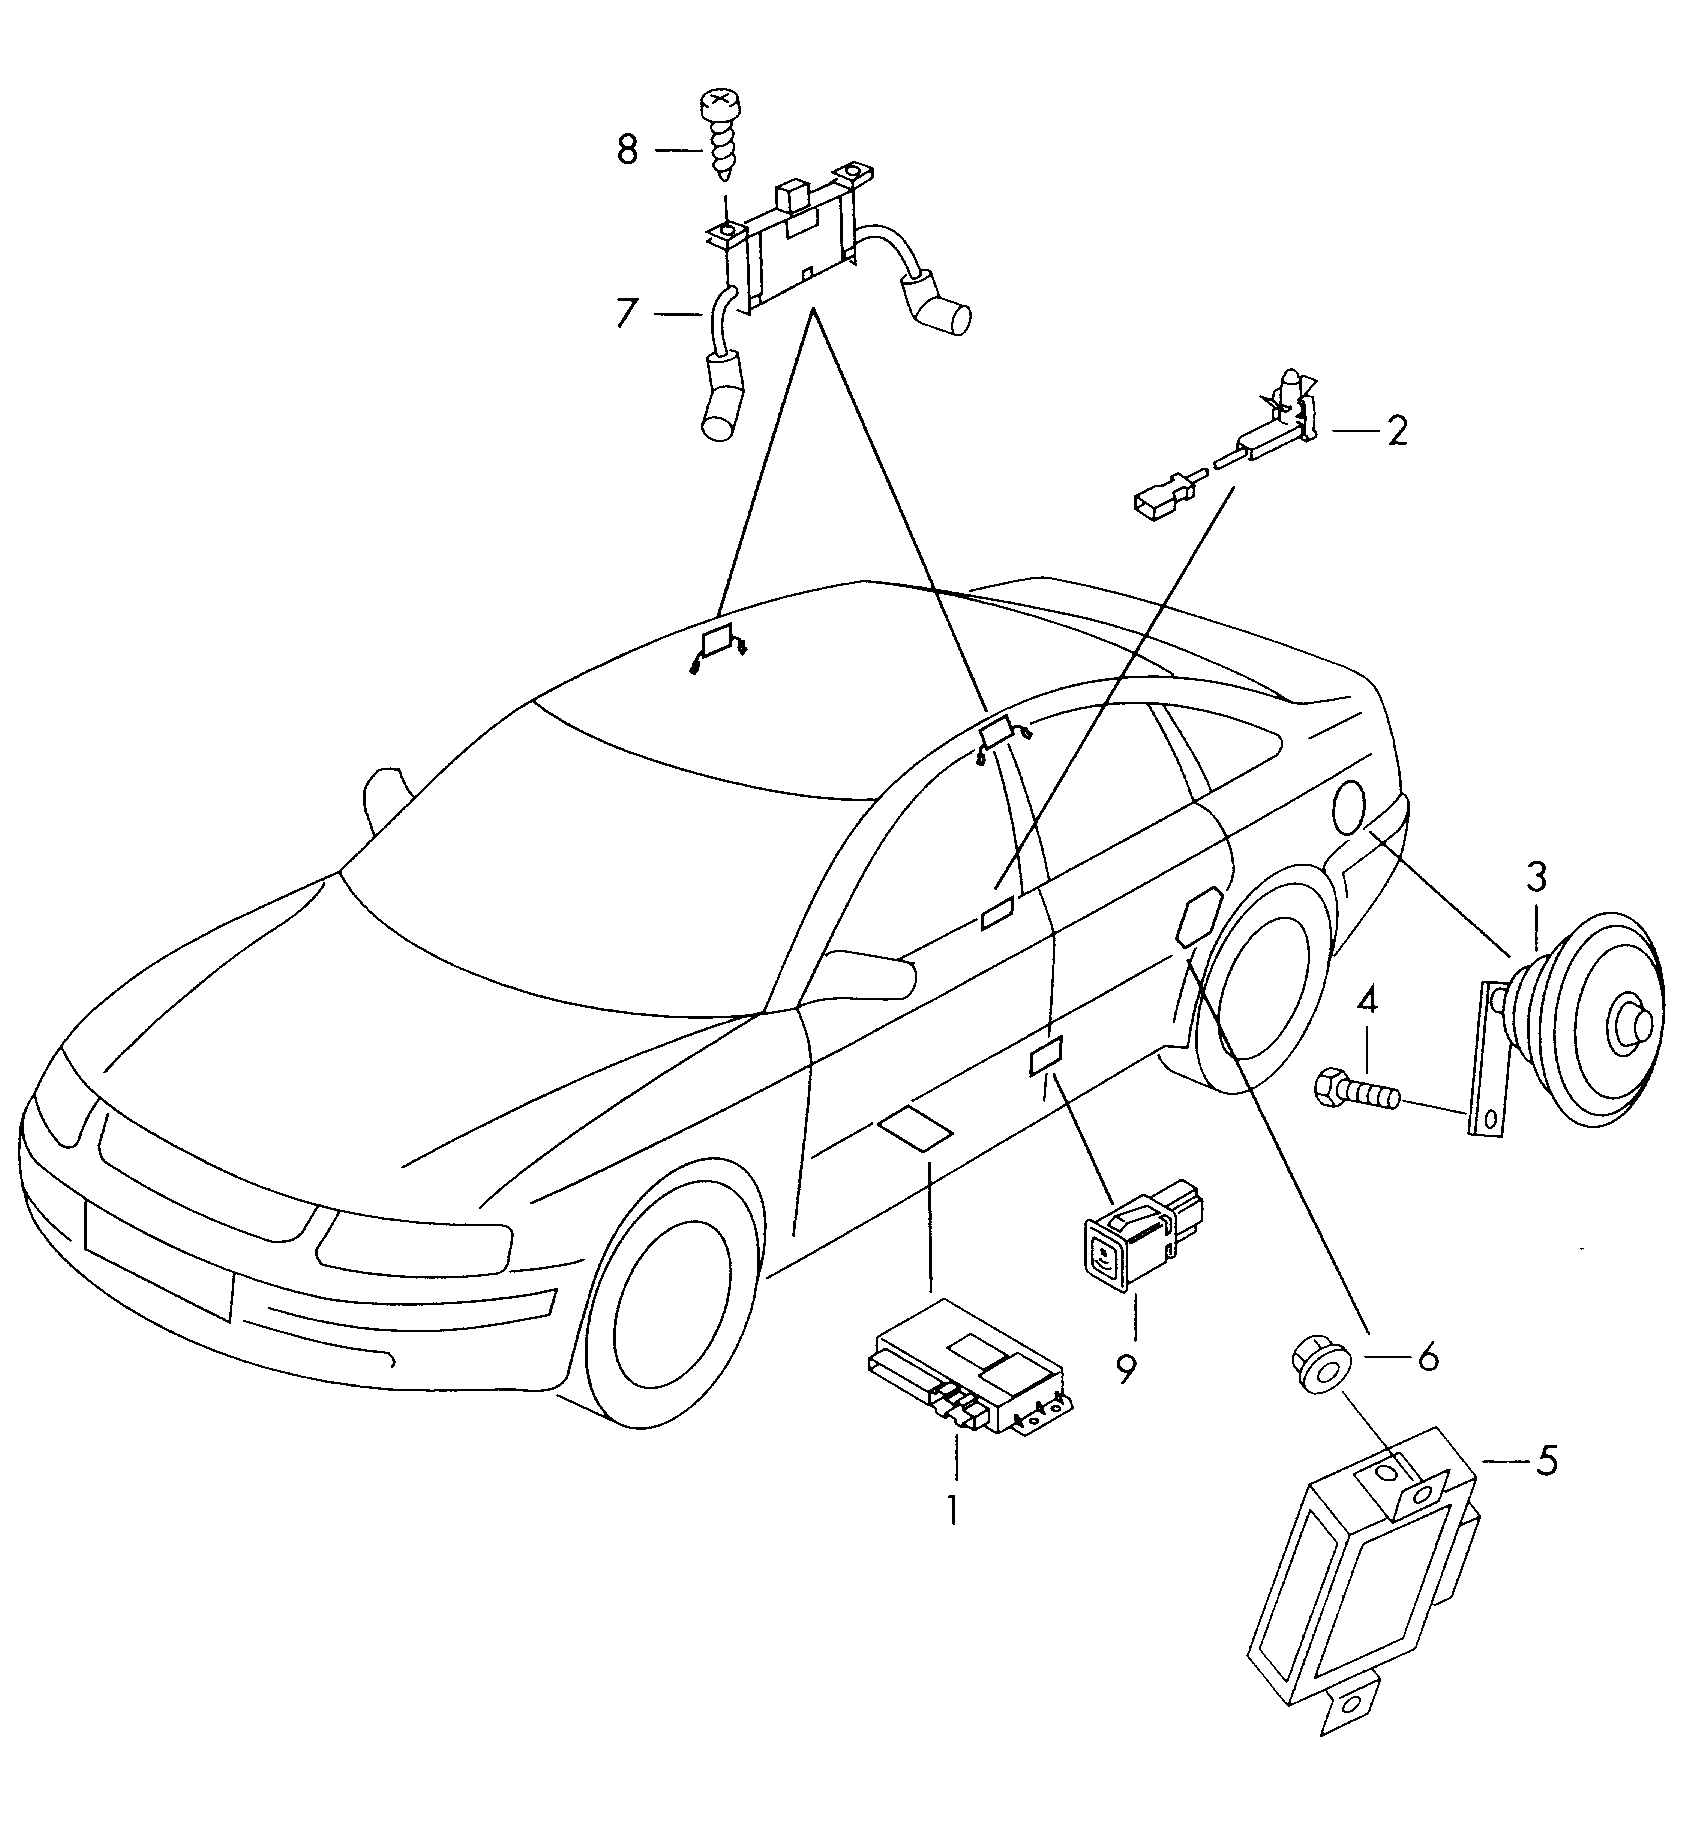 impianto antifurtoPulsante per azionam. elettr.<br>serratura sportello  - Audi A6/Avant - a6